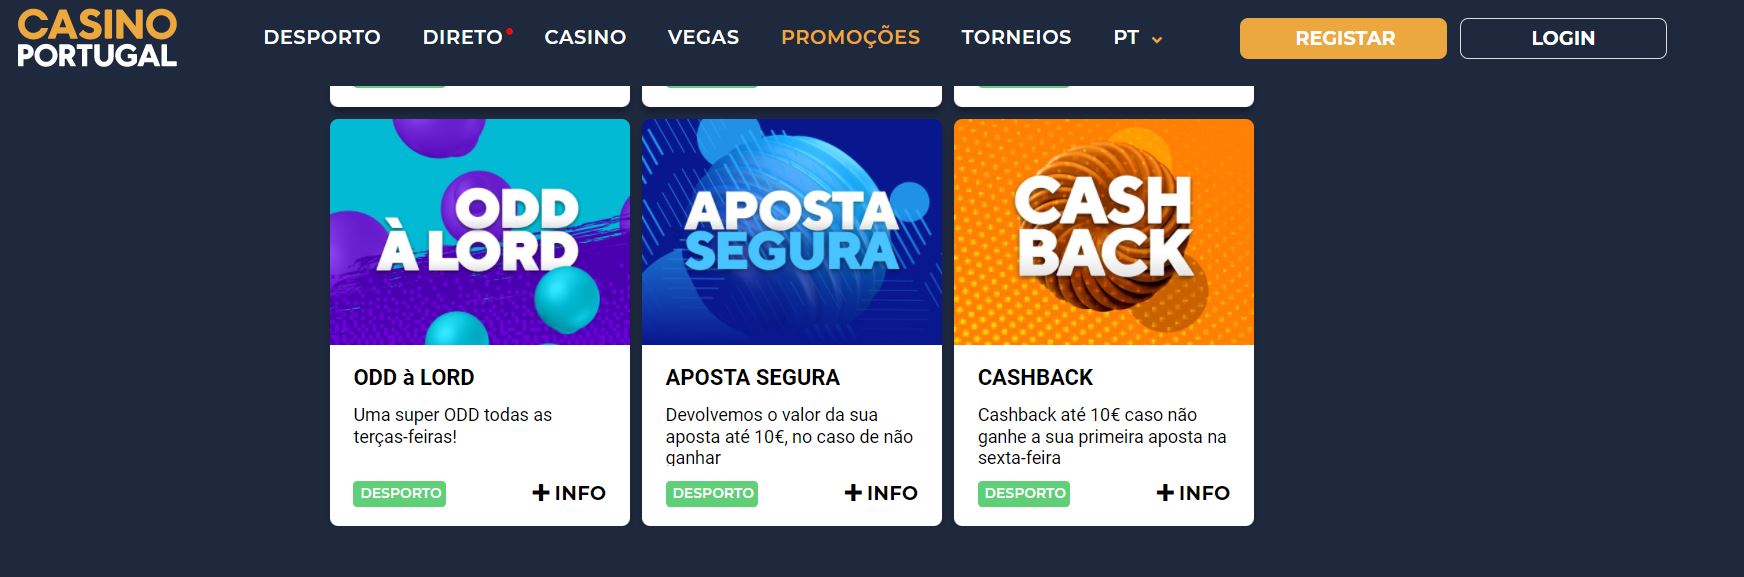 Código promocional Casino Portugal